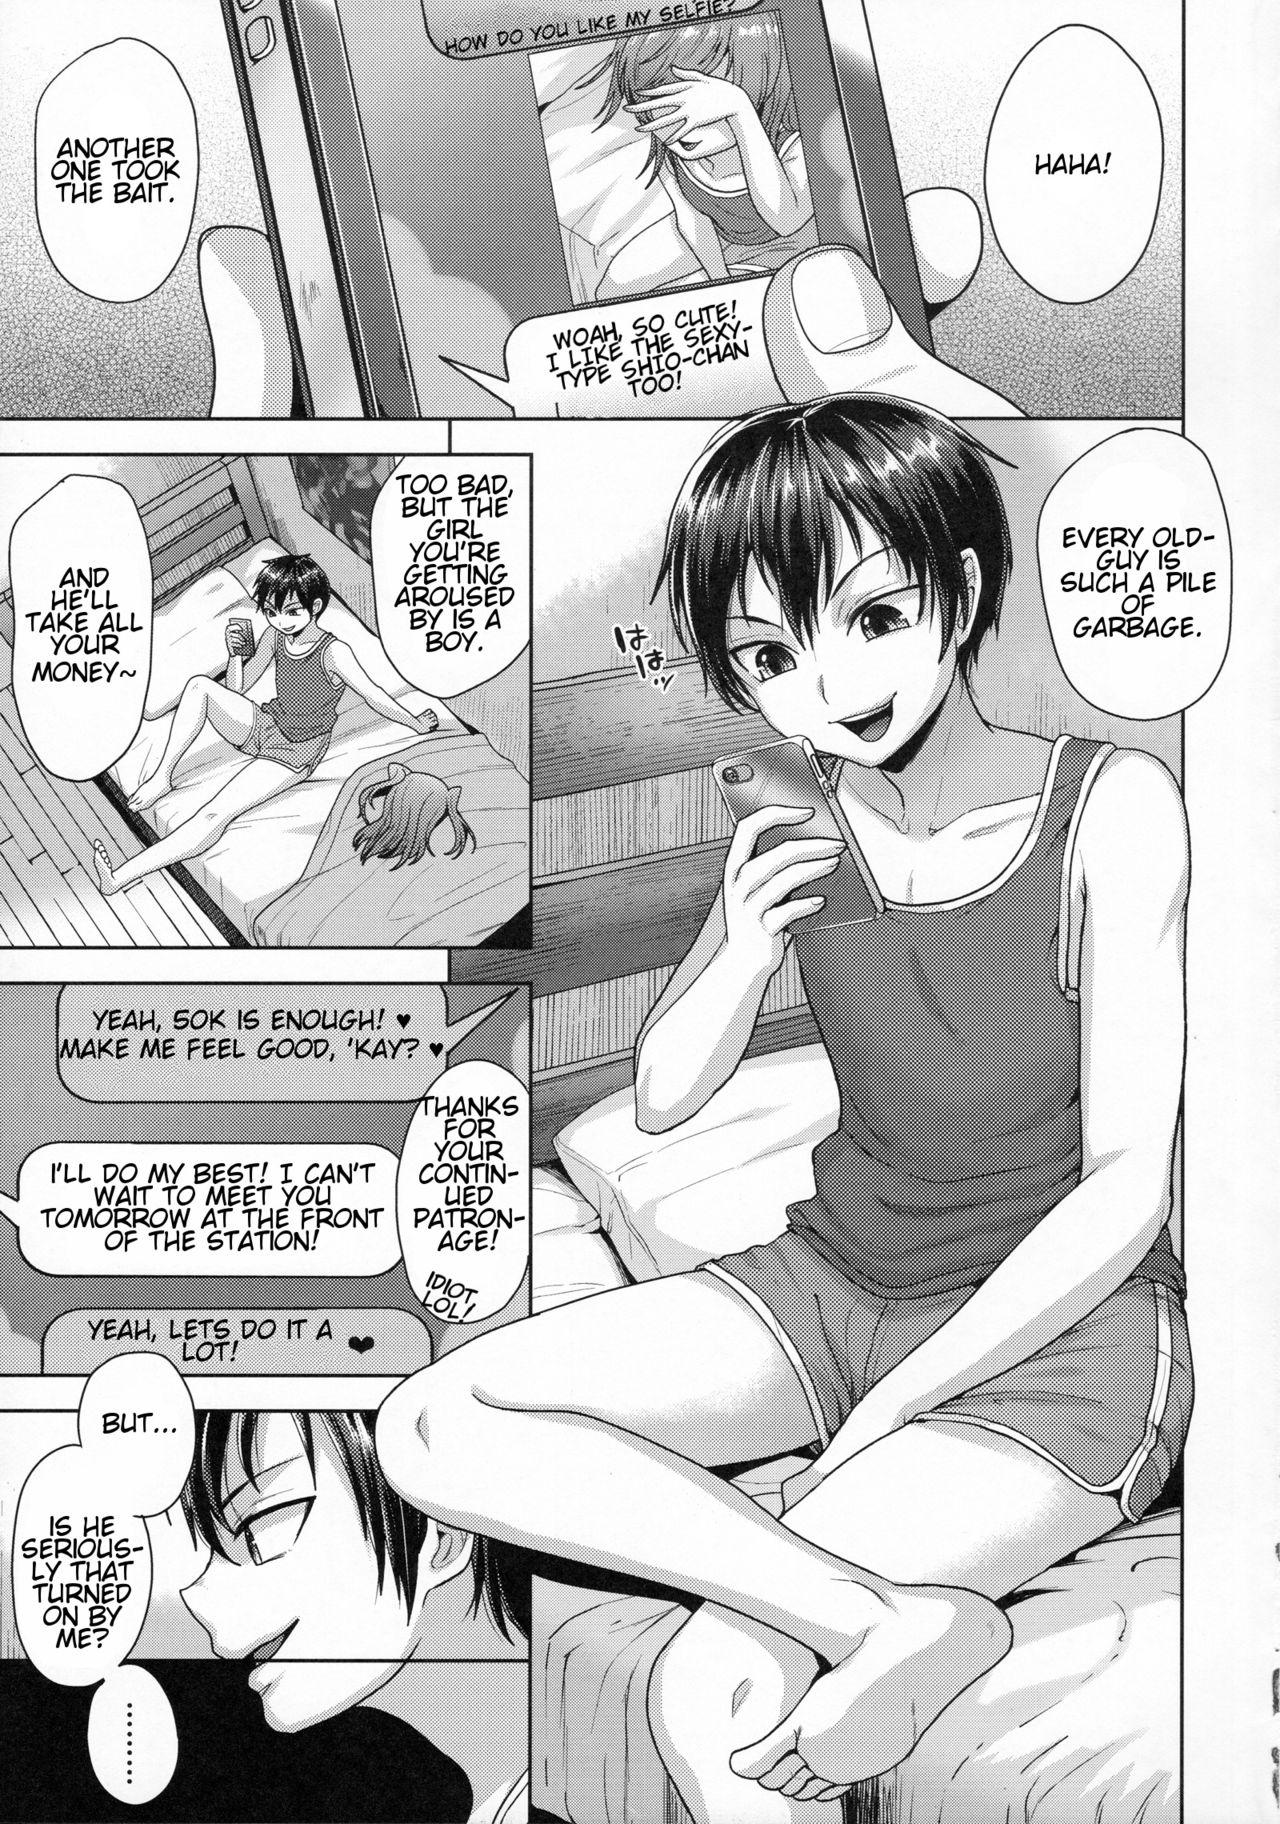 Slut Sayonara Itsumodoori Hot Girl - Page 4